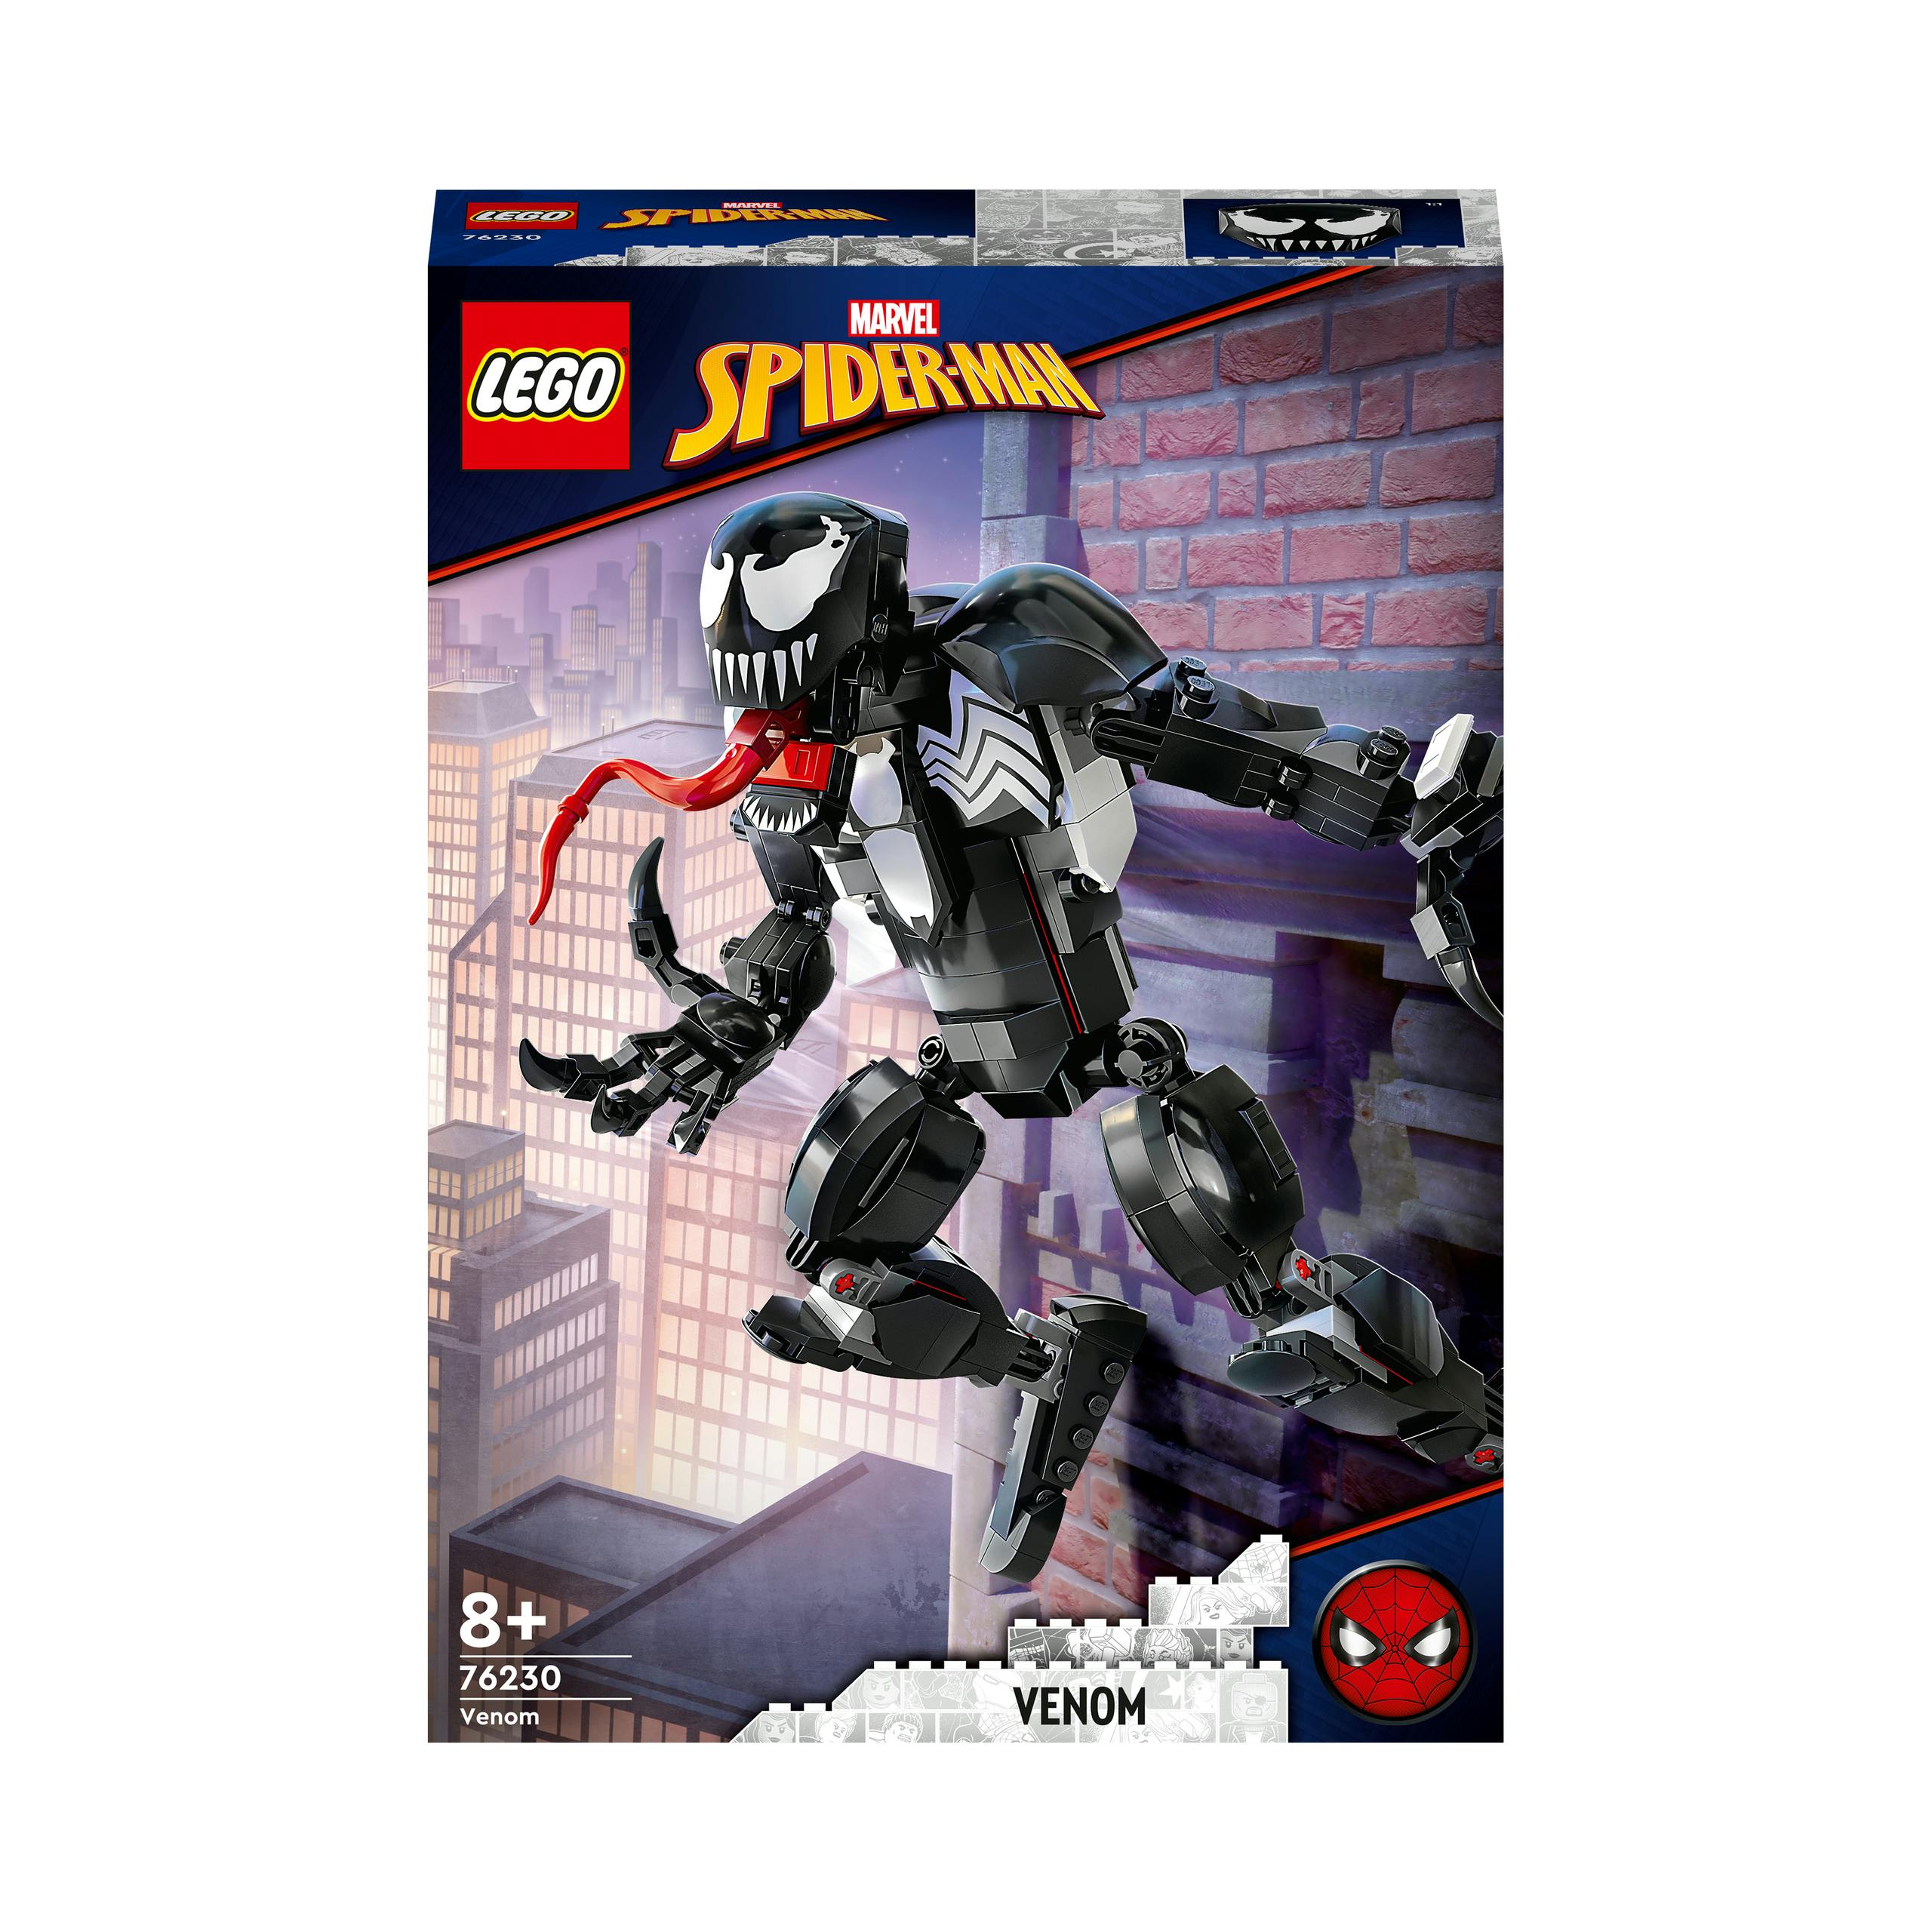 thuis proza bescherming LEGO Spider-Man Venom (76230)